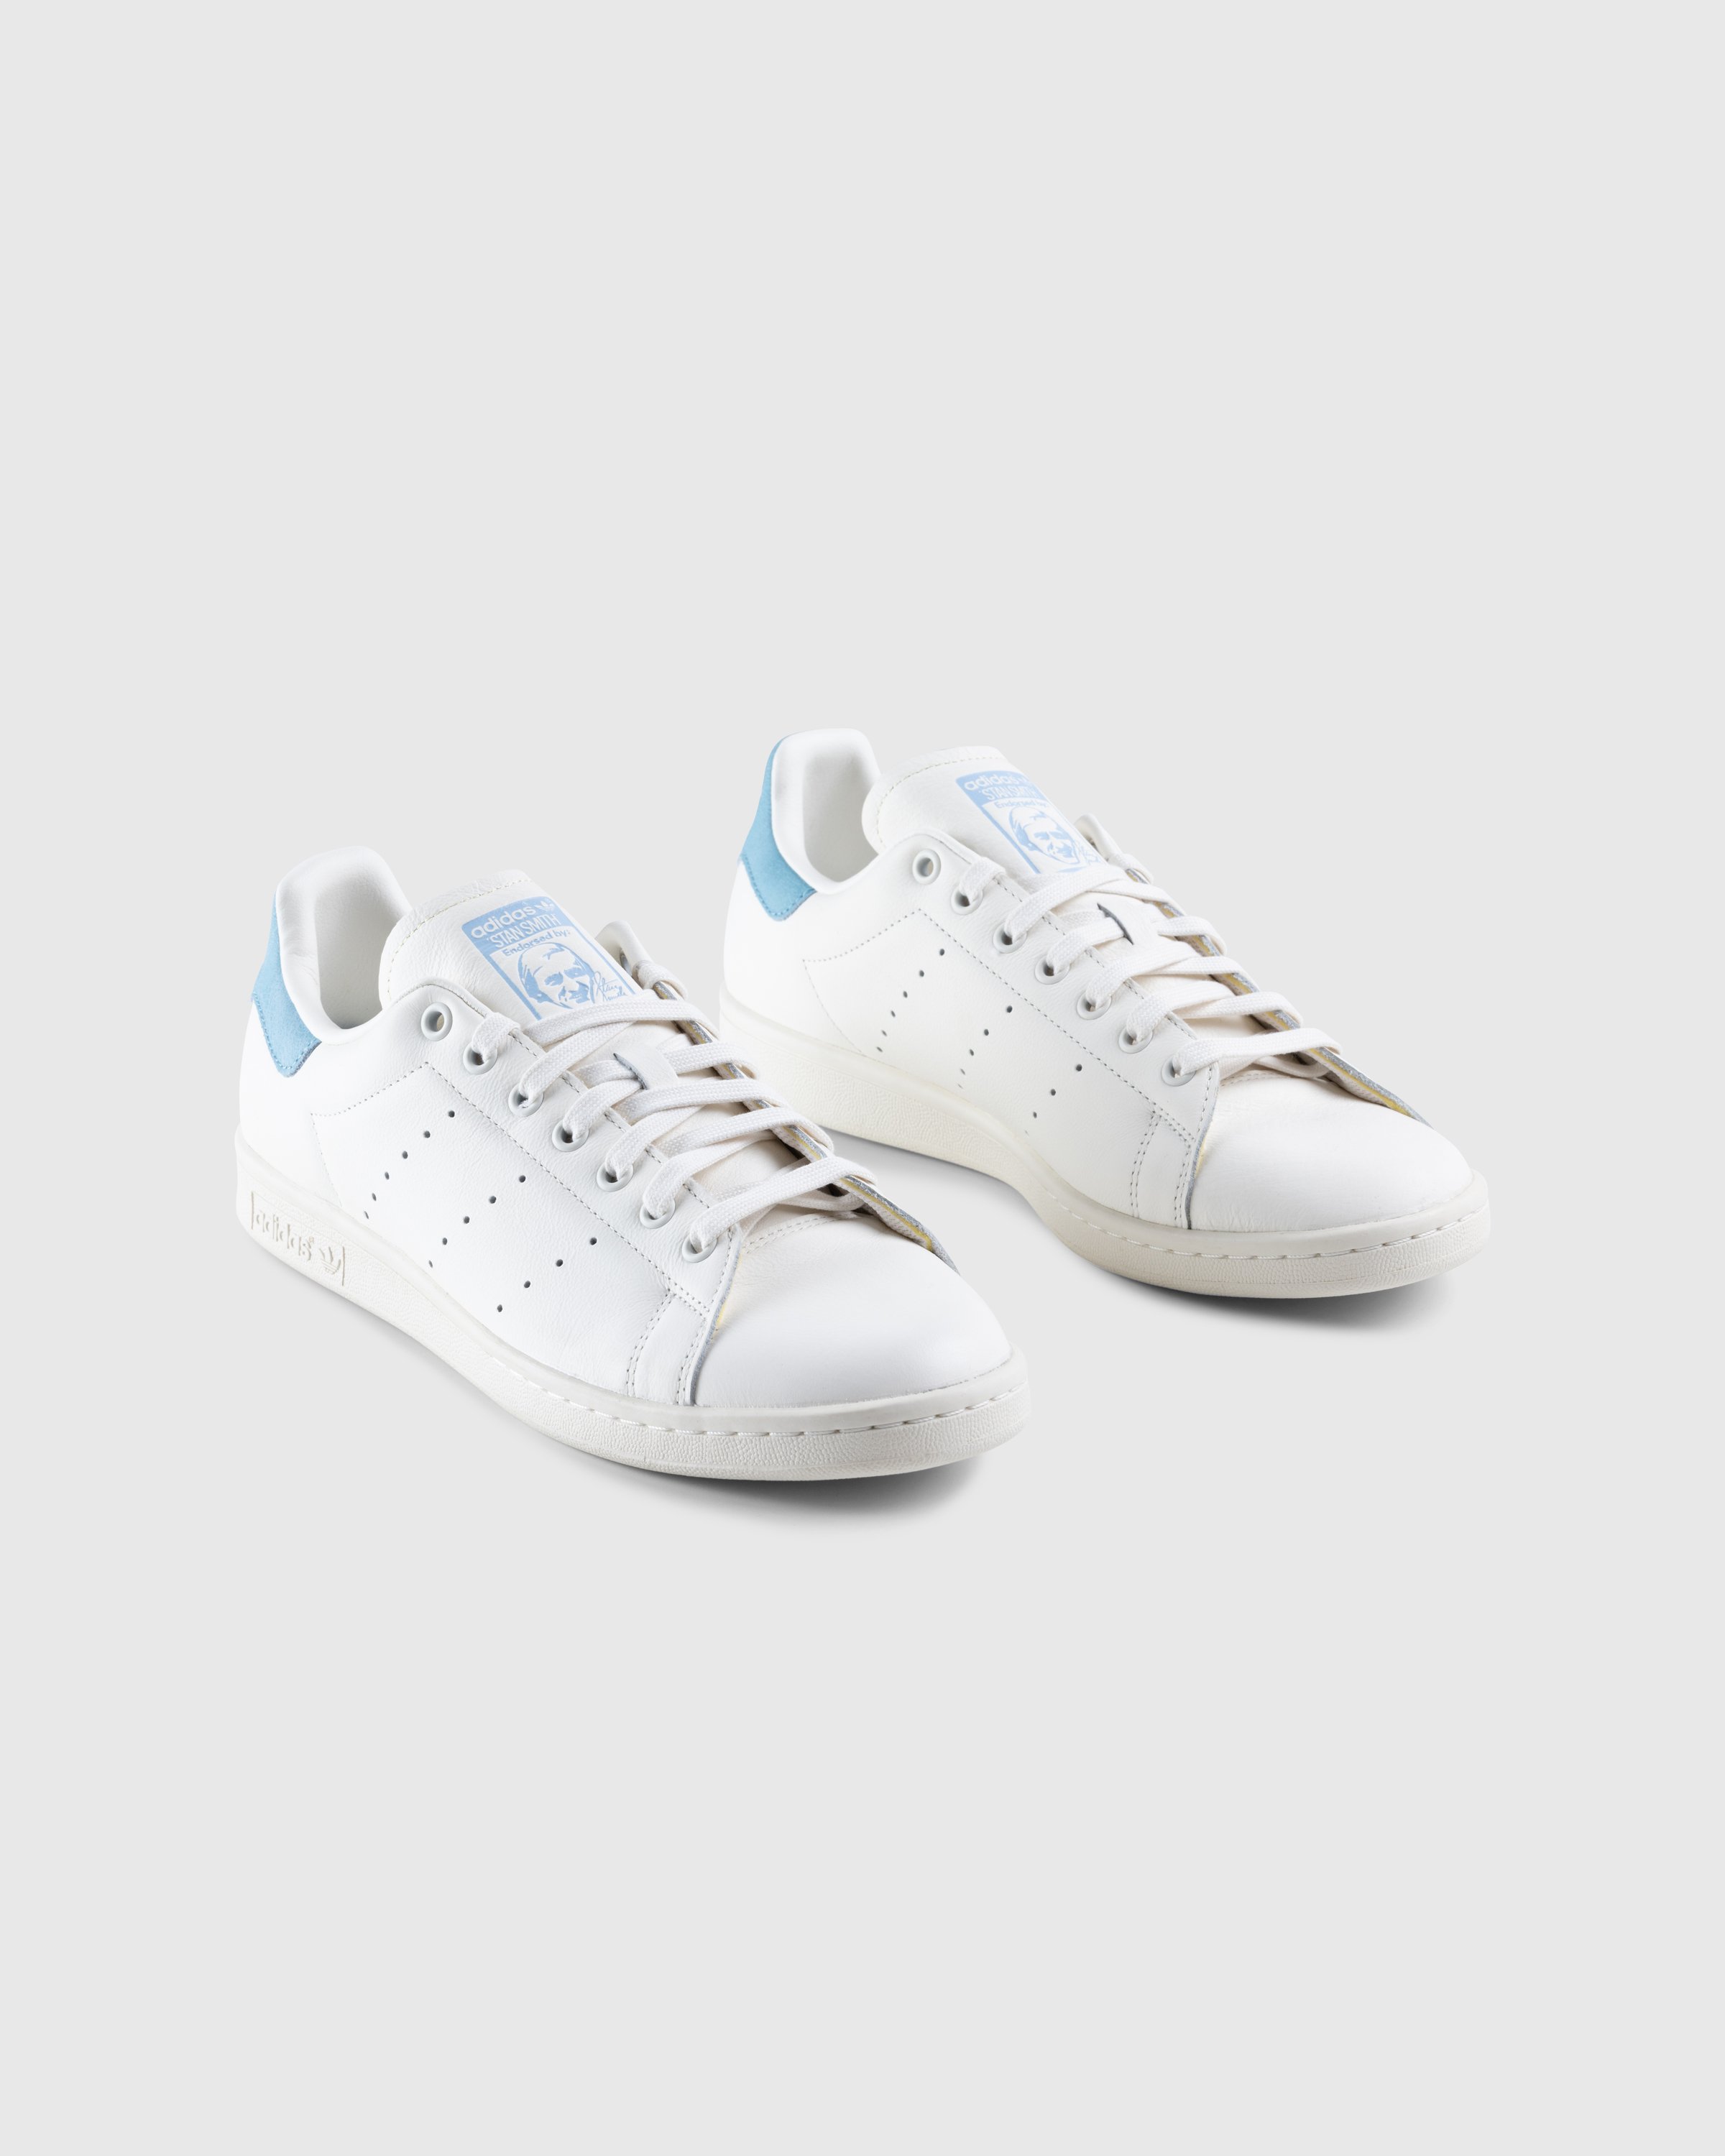 Adidas - Stan Smith White Blue - Footwear - White - Image 3